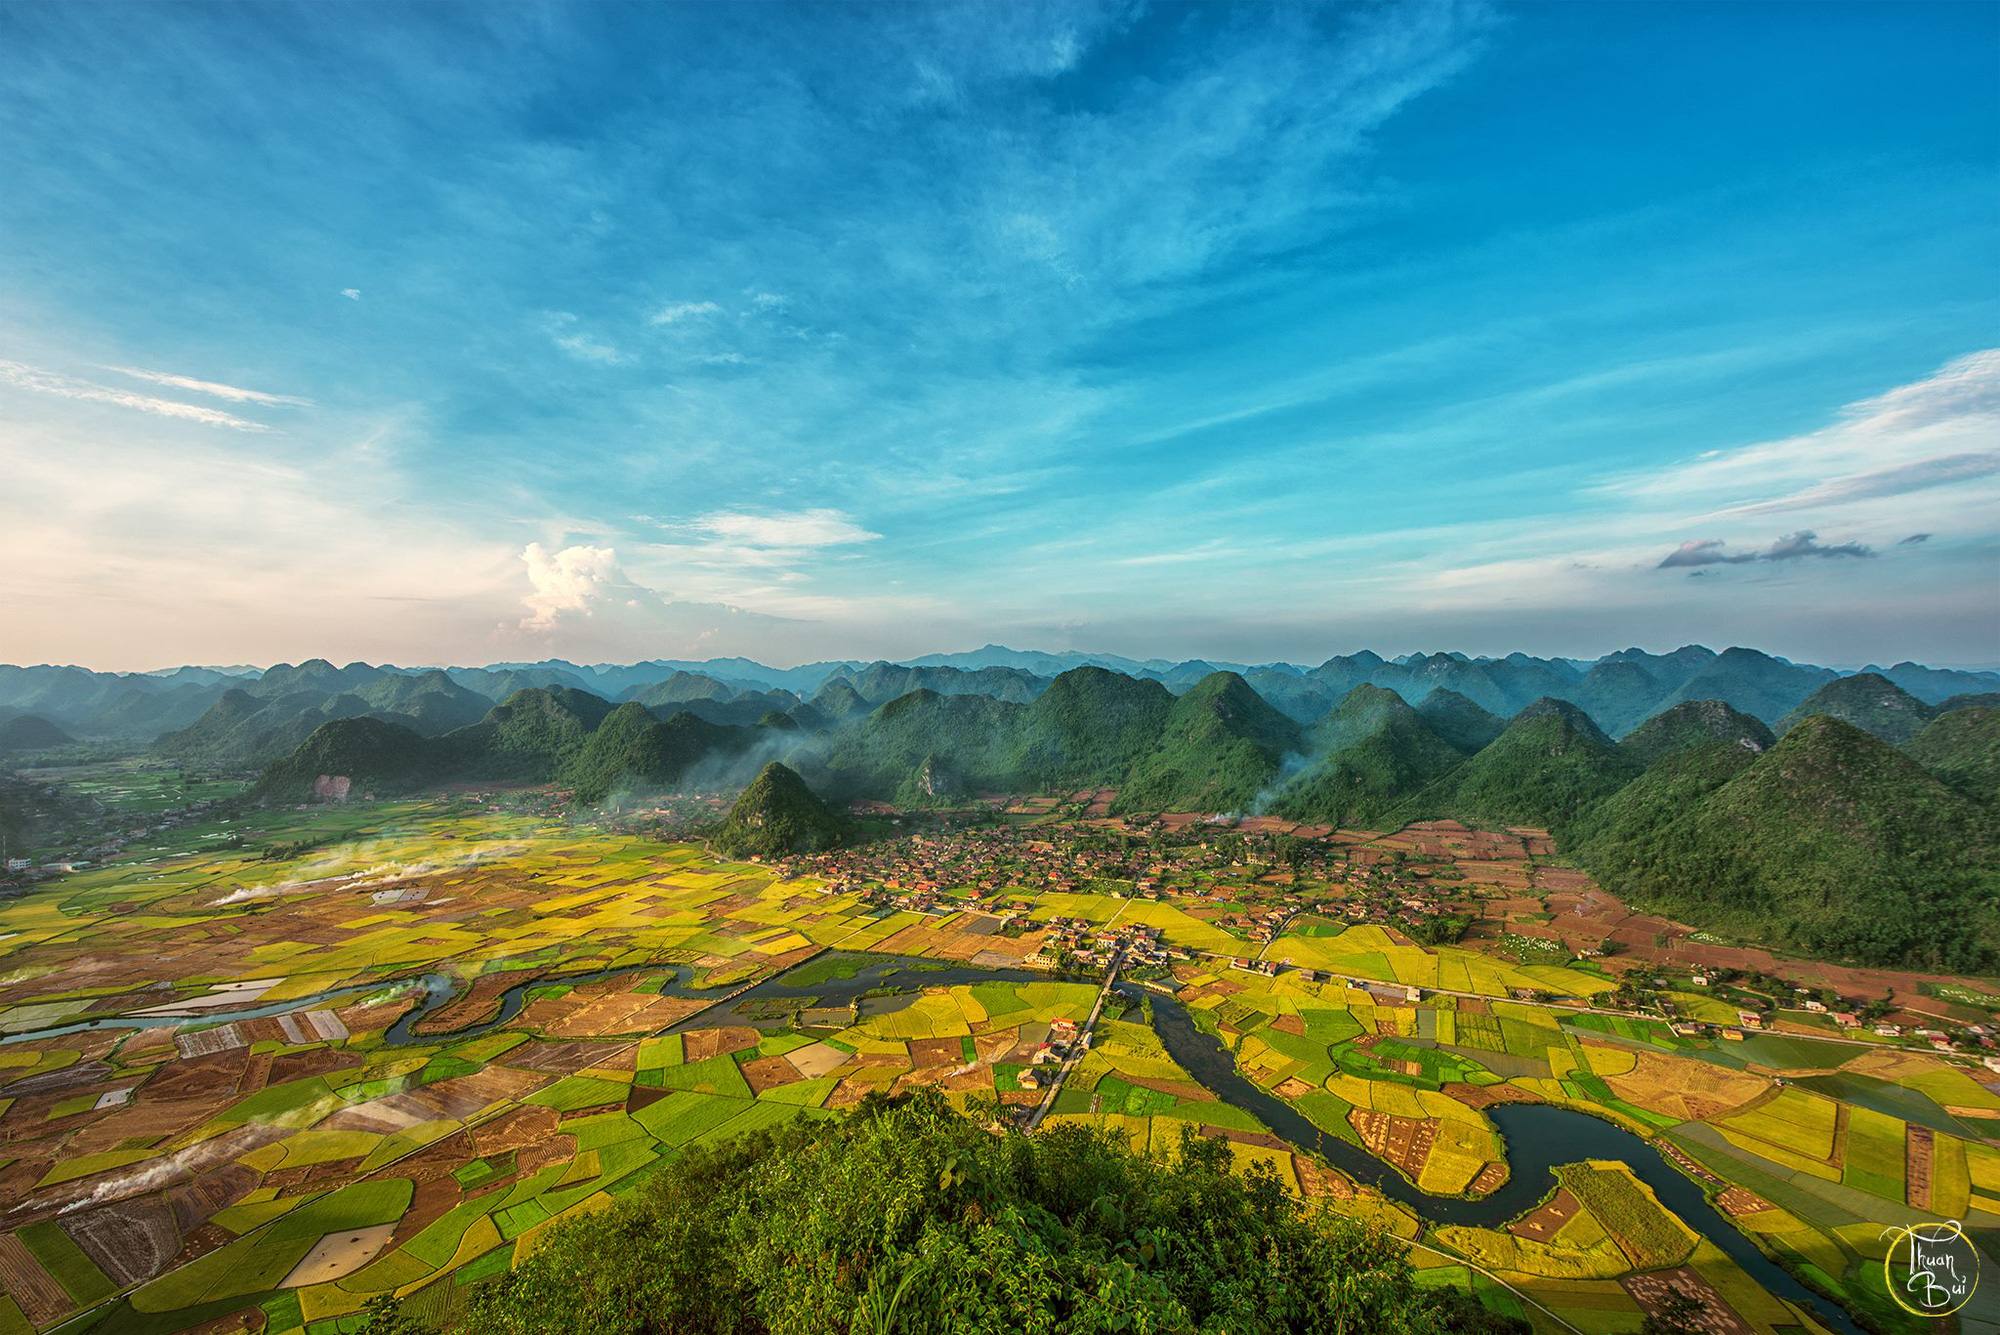 Thung Lũng Bắc Sơn là một trong những điểm du lịch nổi tiếng ở Việt Nam với những cảnh quan tuyệt đẹp. Hãy khám phá tận hưởng vẻ đẹp tuyệt vời cùng hình ảnh liên quan đến Thung Lũng Bắc Sơn.